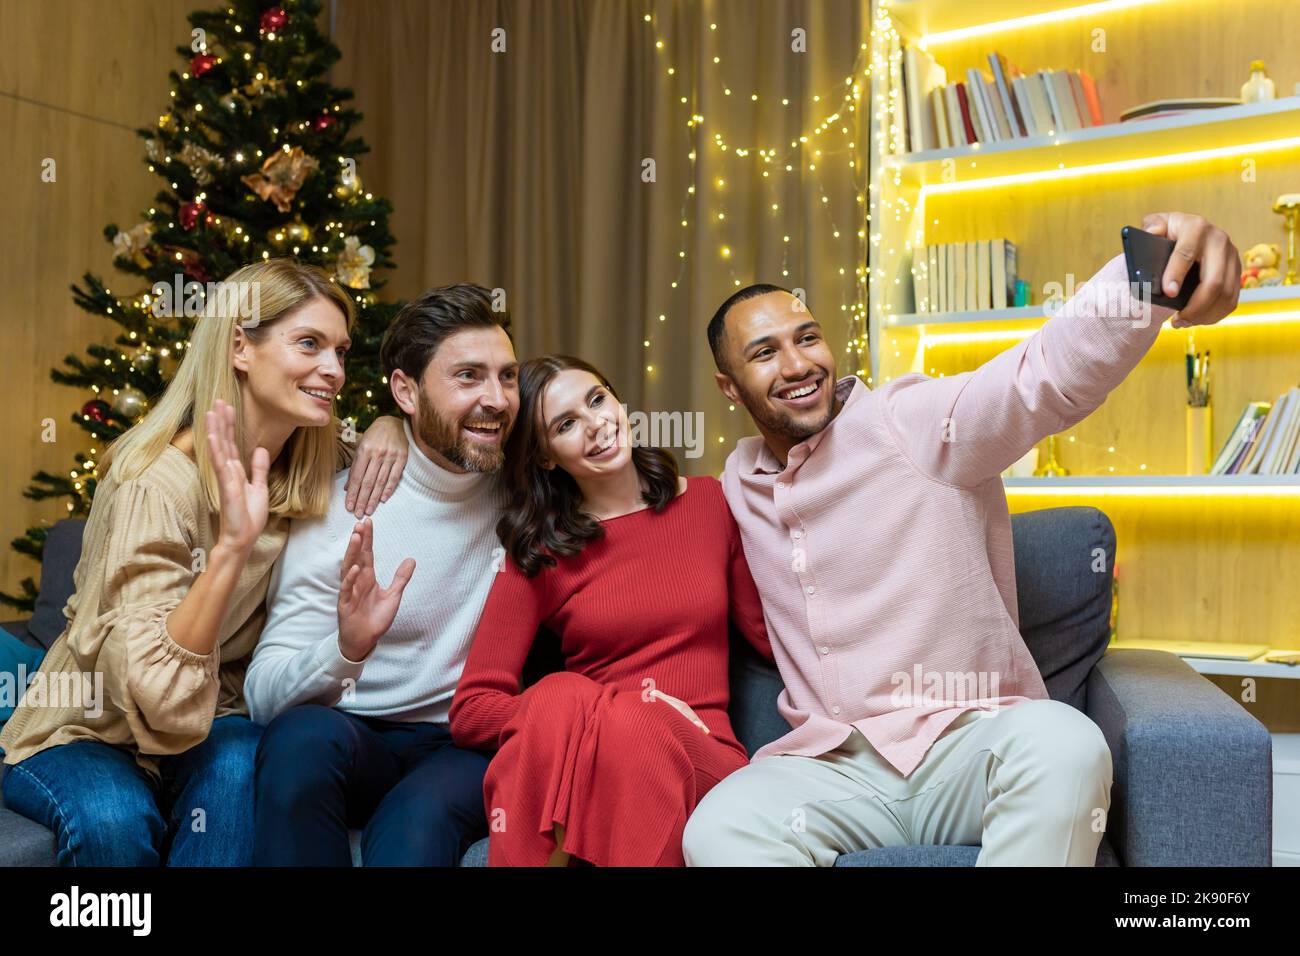 La fête du nouvel an accueille divers groupes d'amis, d'hommes et de femmes, assis sur le canapé, emportant un selfie ensemble, utilisant un smartphone, les clients regardant le téléphone, parlant sur un appel vidéo pour Noël Banque D'Images